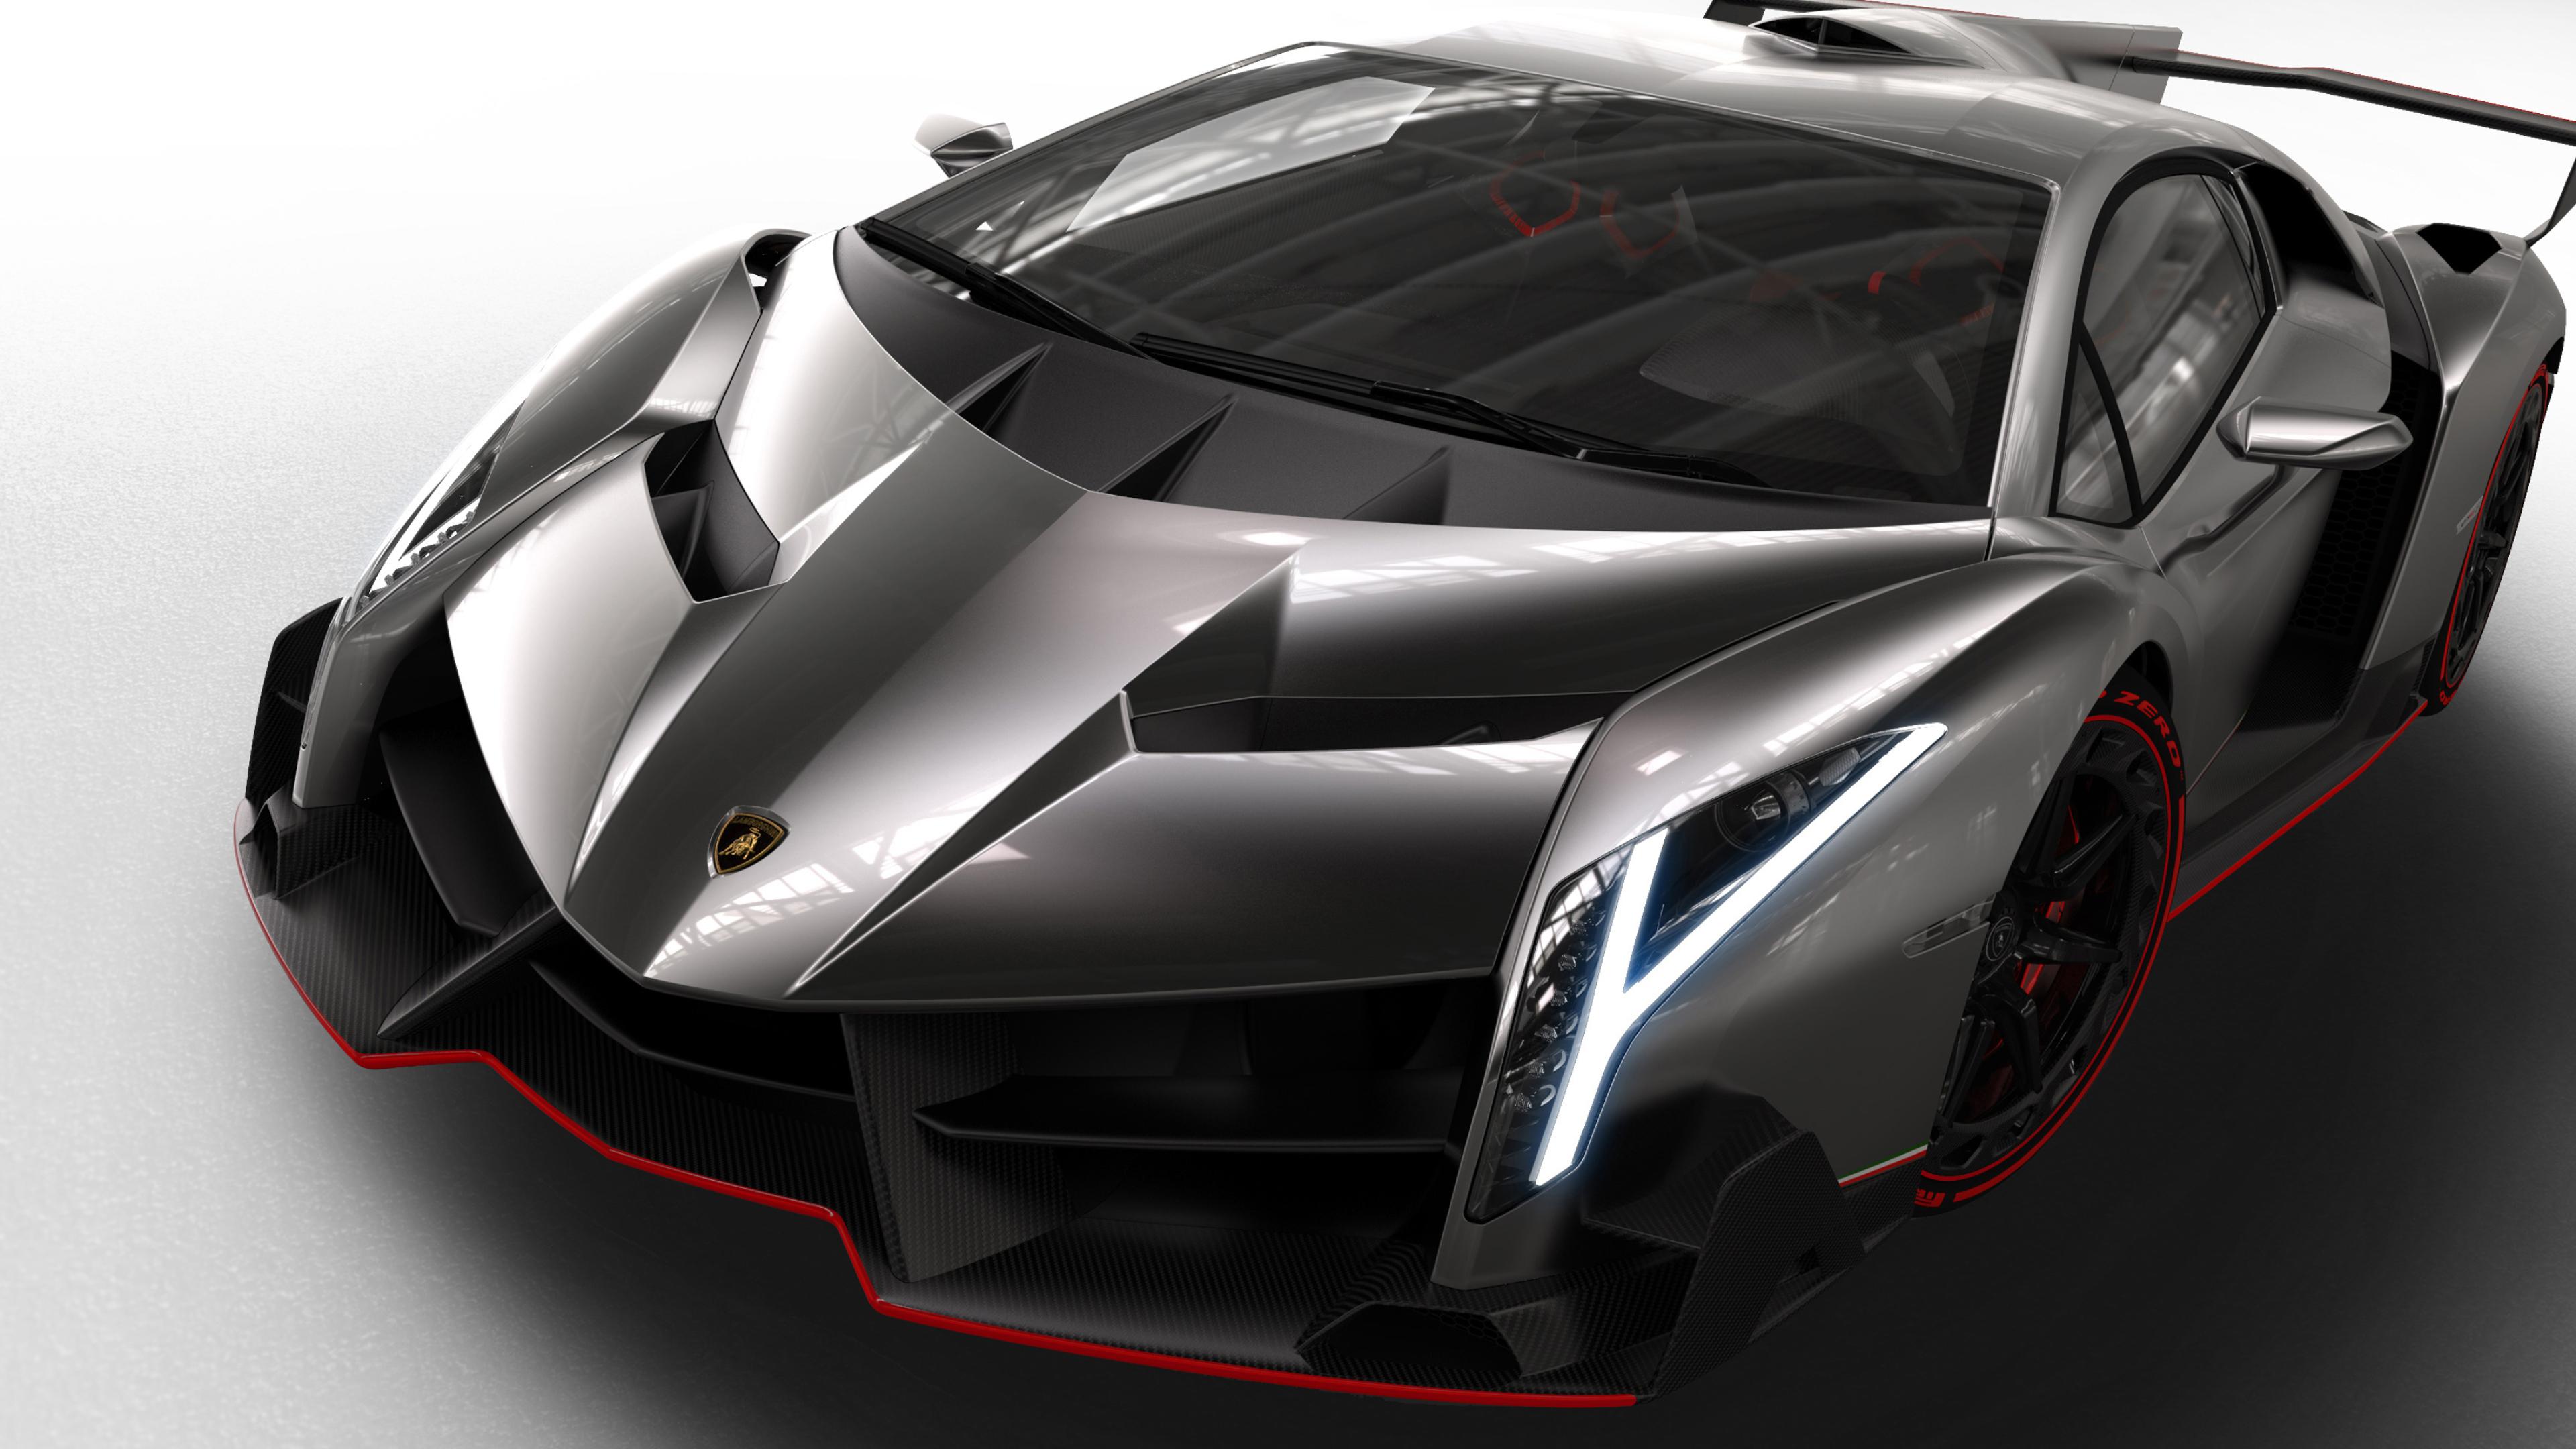 Lamborghini Veneno, Auto design, Limited edition, Aerospace inspiration, 3840x2160 4K Desktop